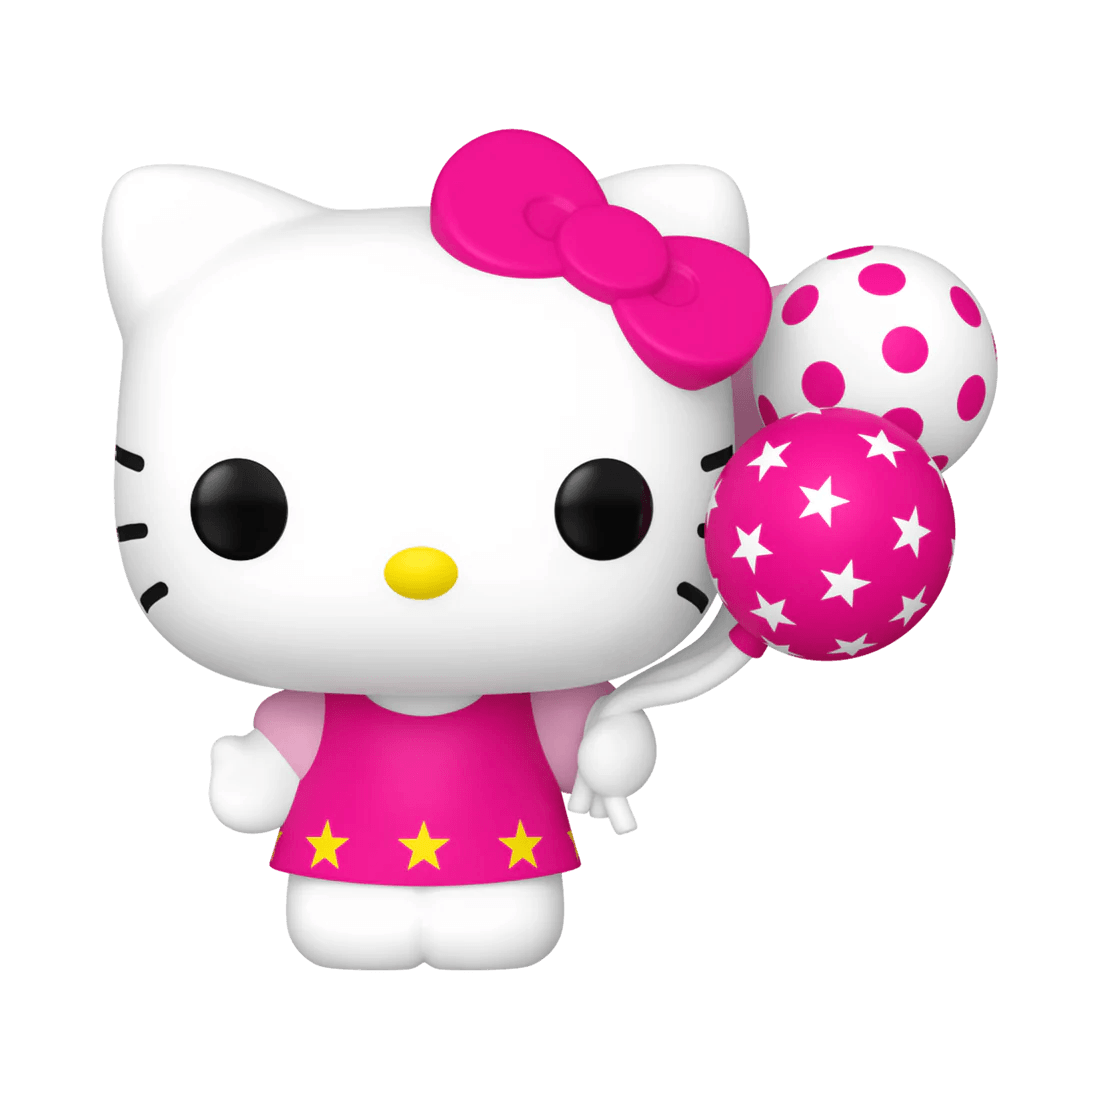 FUN77483 Hello Kitty - Hello Kitty with Pink Balloons Pop! Vinyl - Funko - Titan Pop Culture